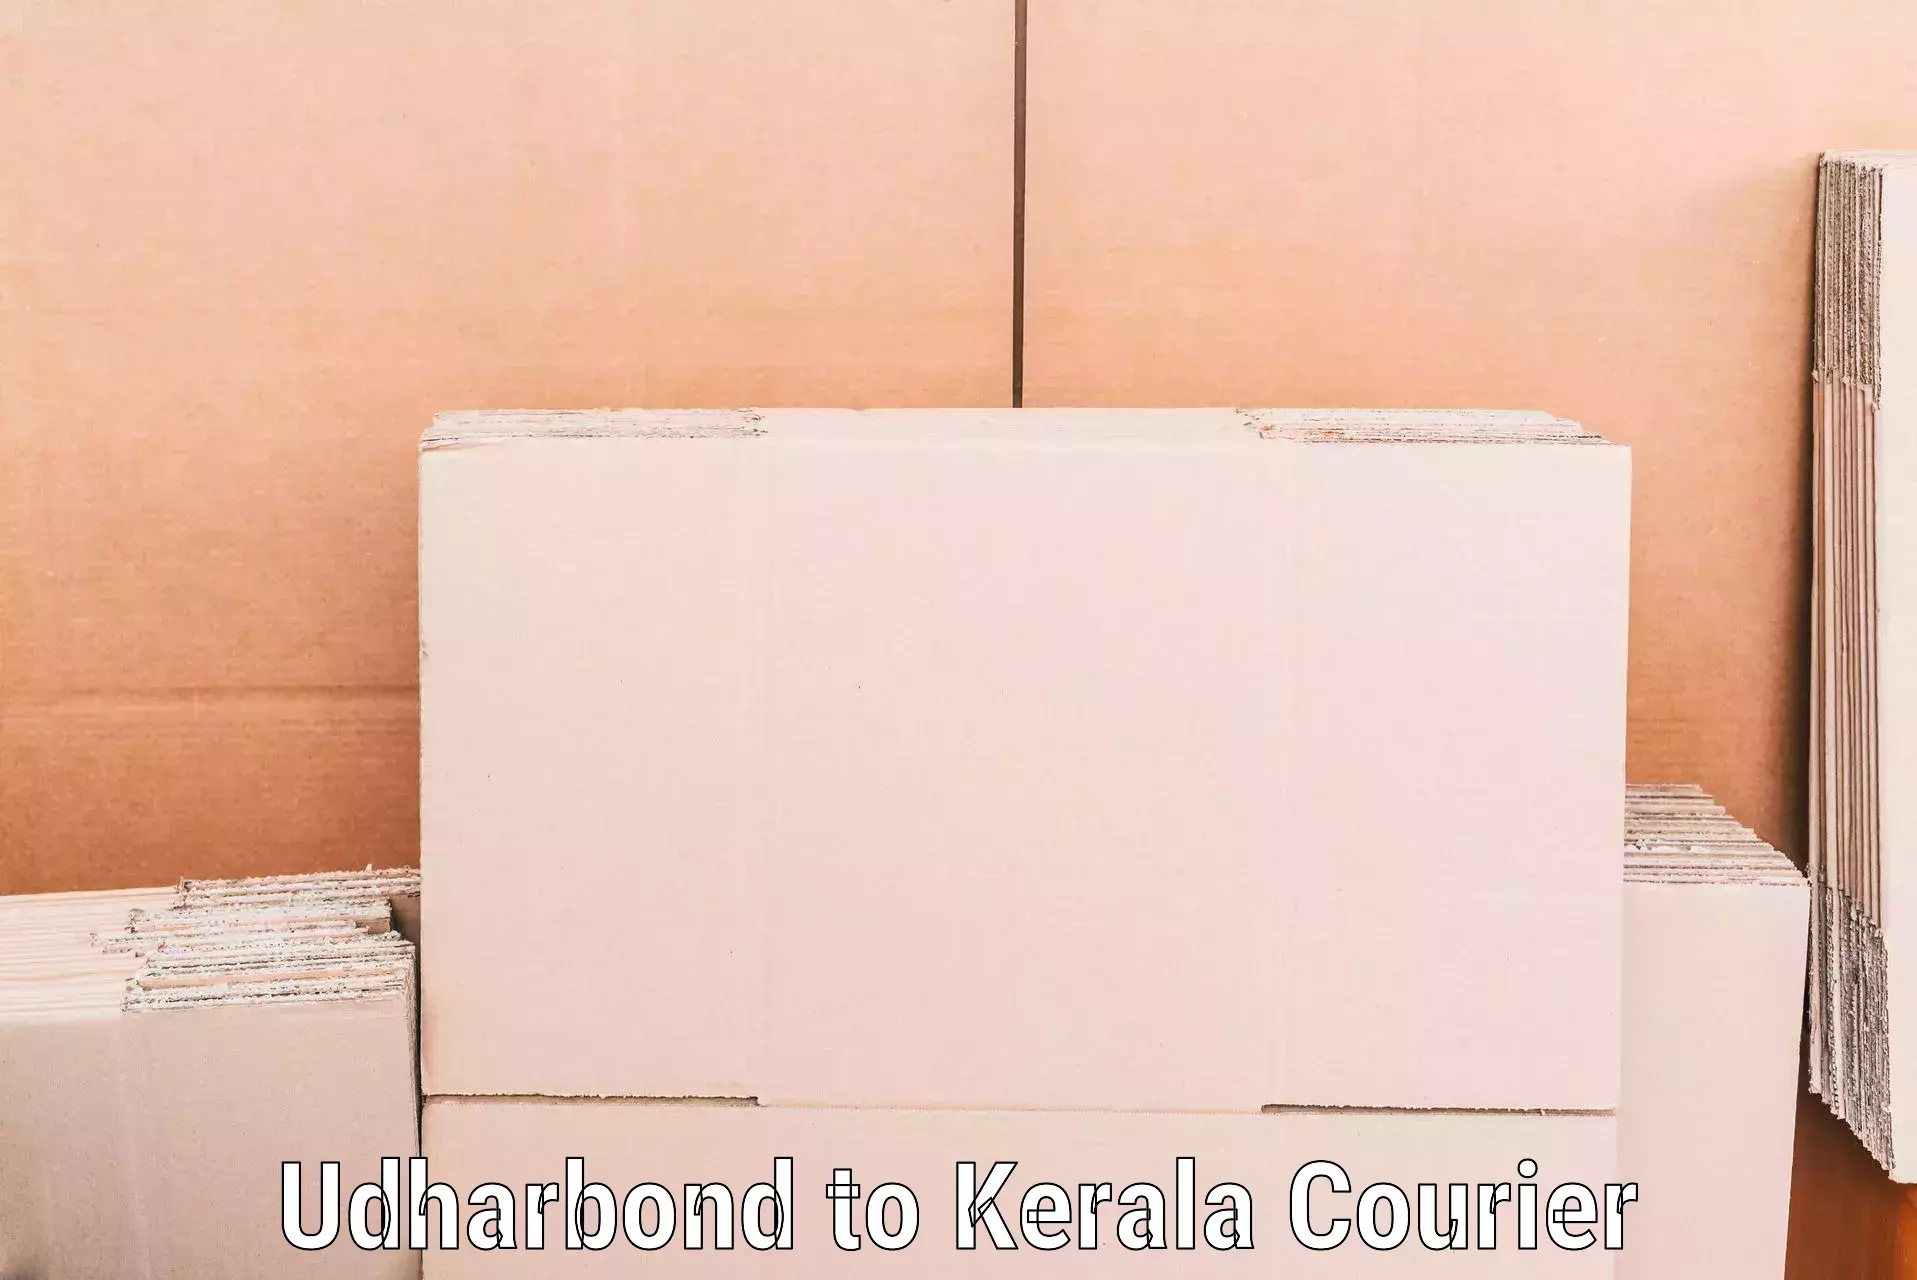 Quality moving company Udharbond to Kakkur